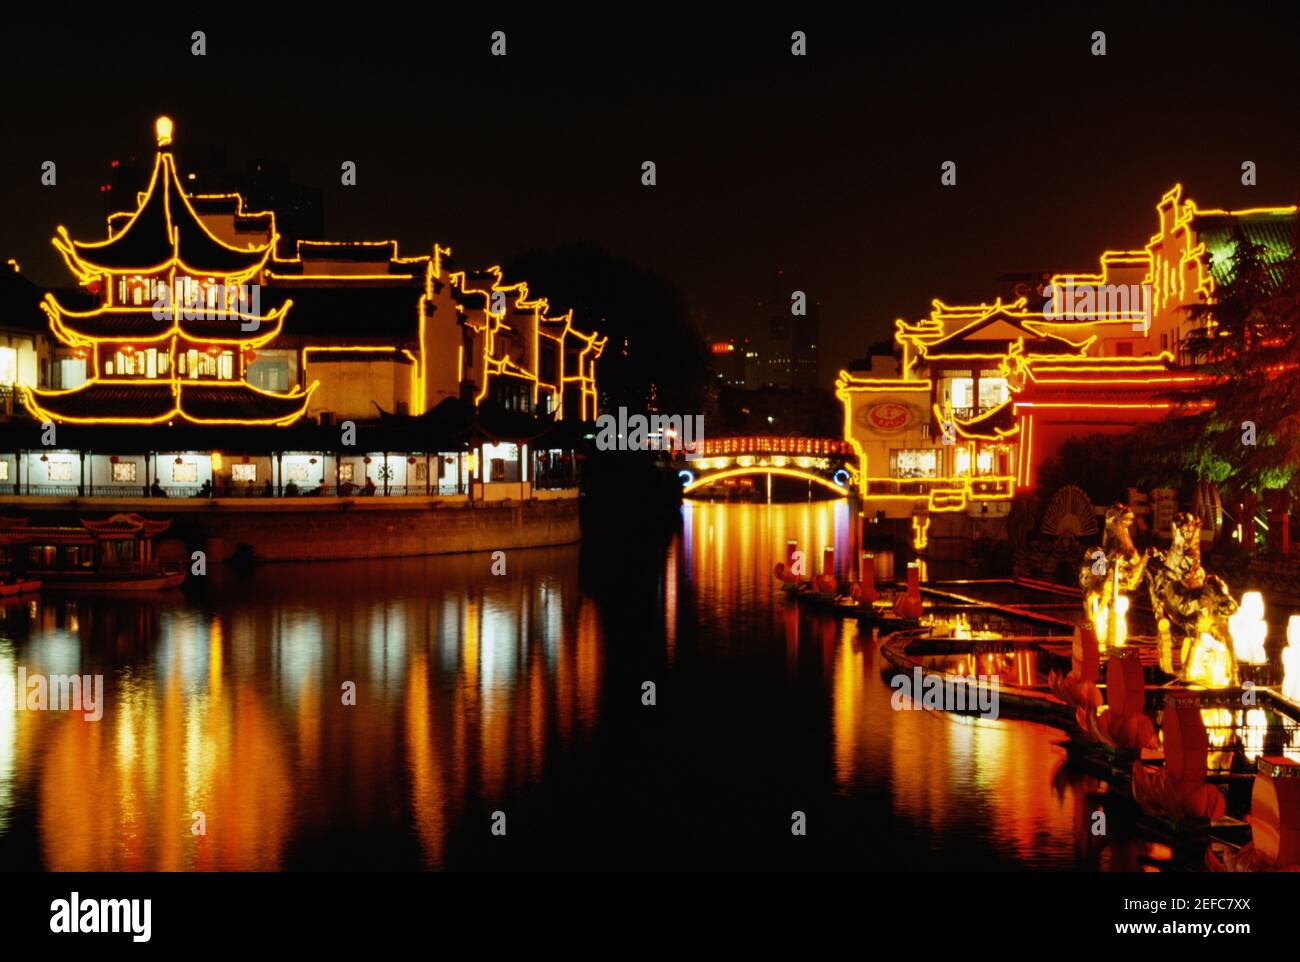 Reflet d'un temple illuminé dans l'eau, Temple confucianiste, Nanjing, province de Jiangsu, Chine Banque D'Images